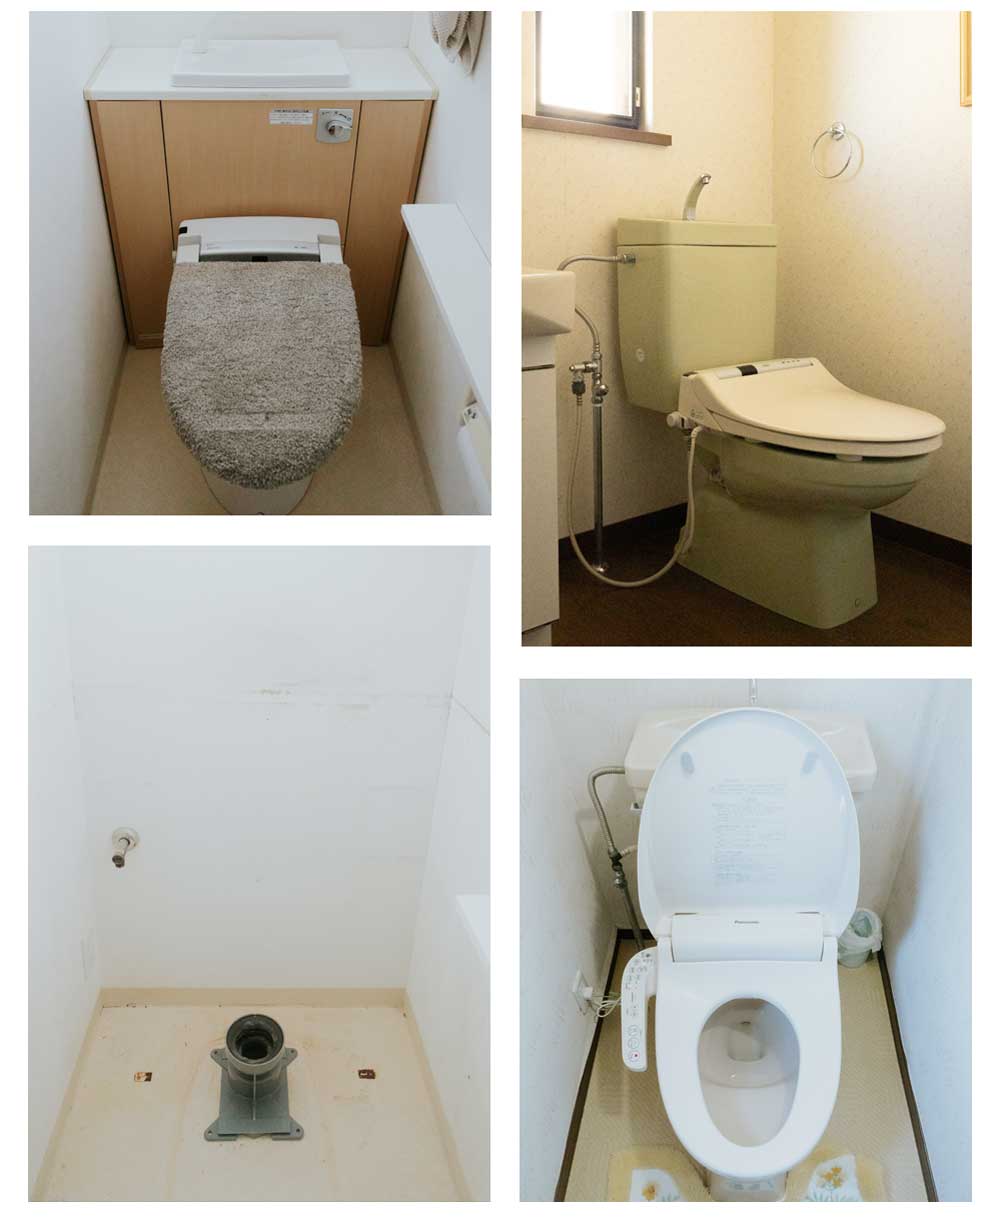 低価格なトイレ詰まり除去作業料金の例